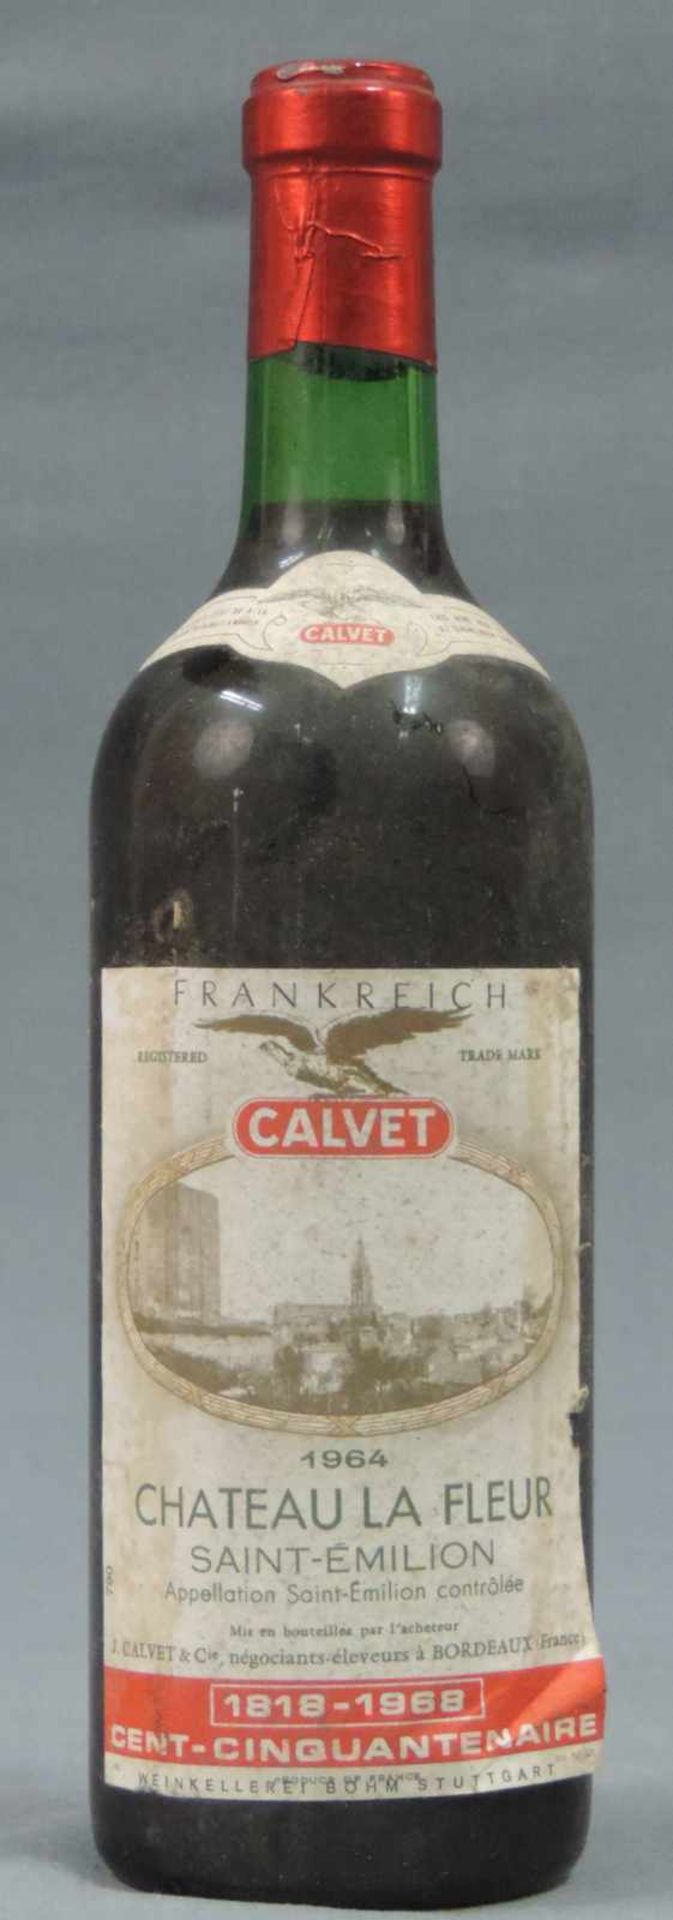 1964 Chateau La Fleur, Saint - Emillion, AC von Calvet. Eine ganze Flasche. In einem